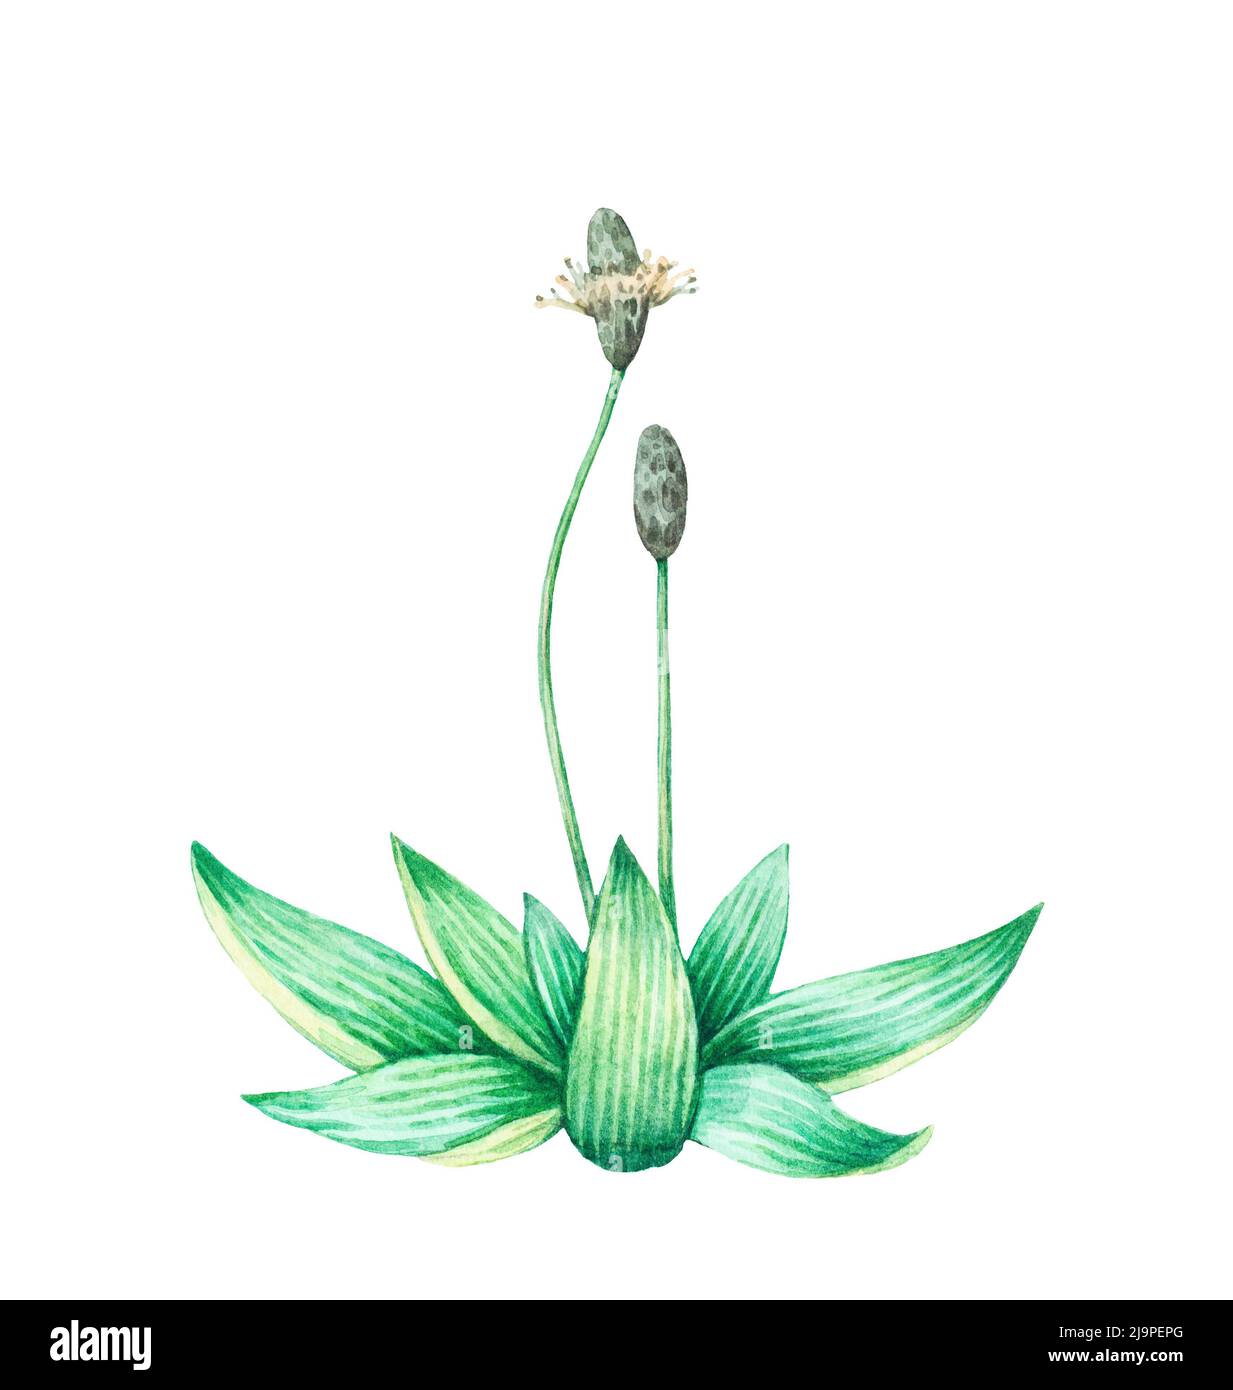 Detailed realistic watercolor botanical illustration. Plantain, plantago lanceolata, isolated on white background. Stock Photo